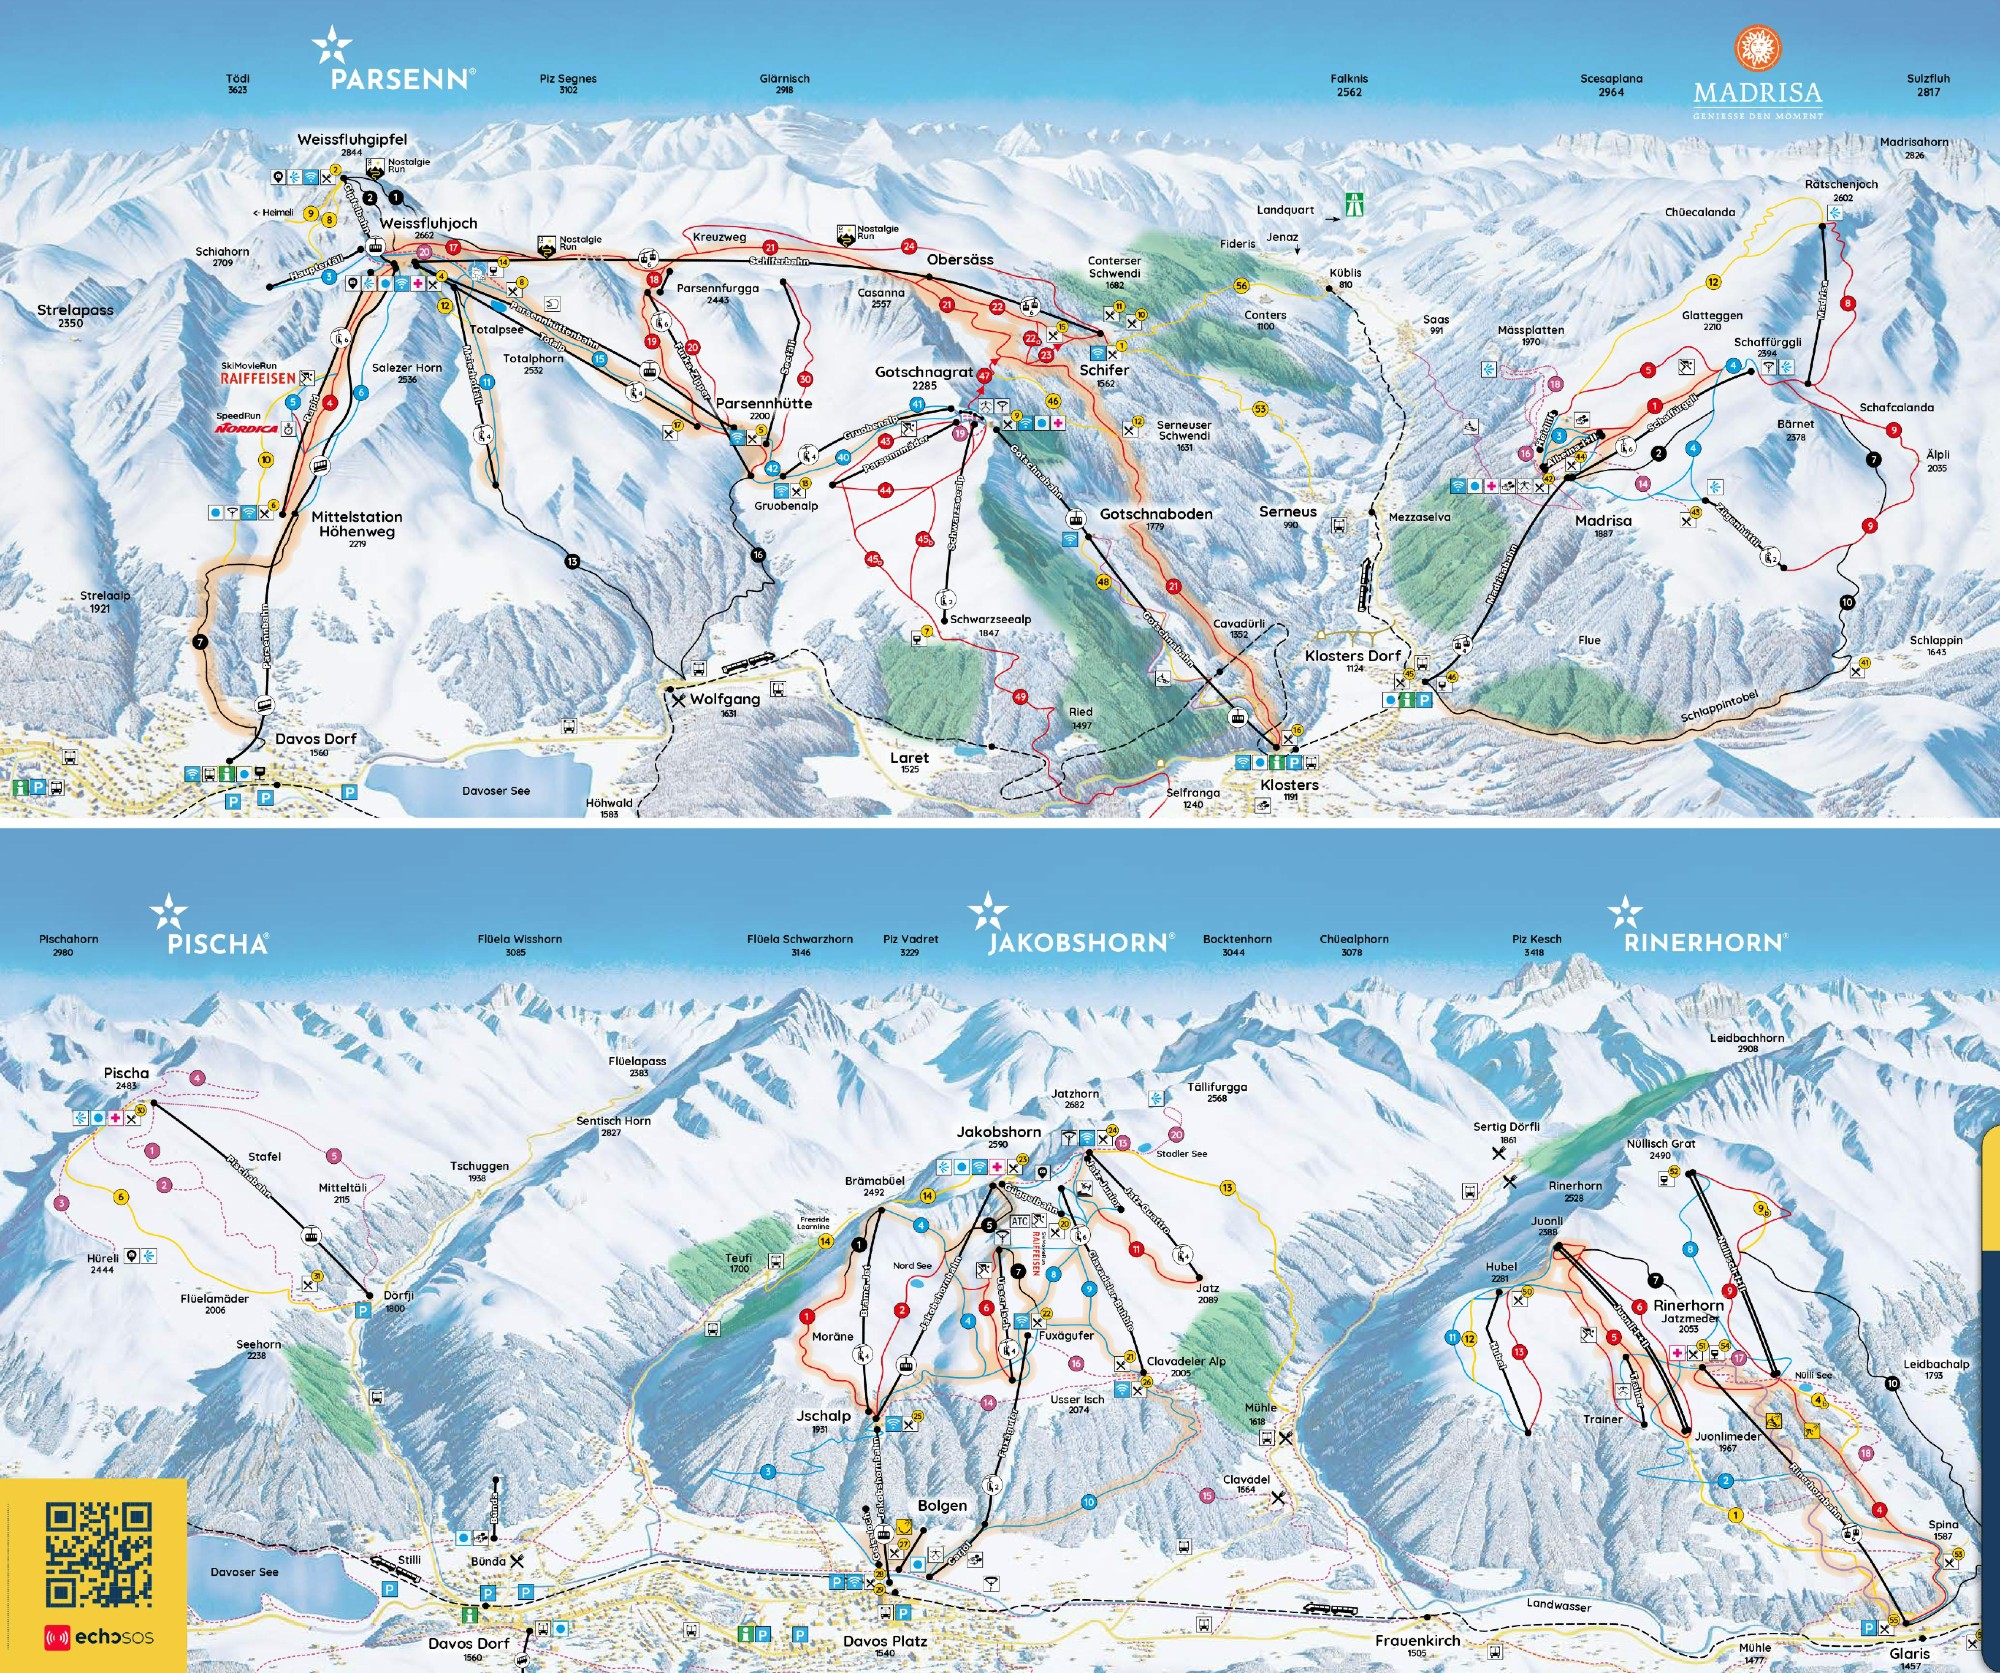 Davos Klosters ski region